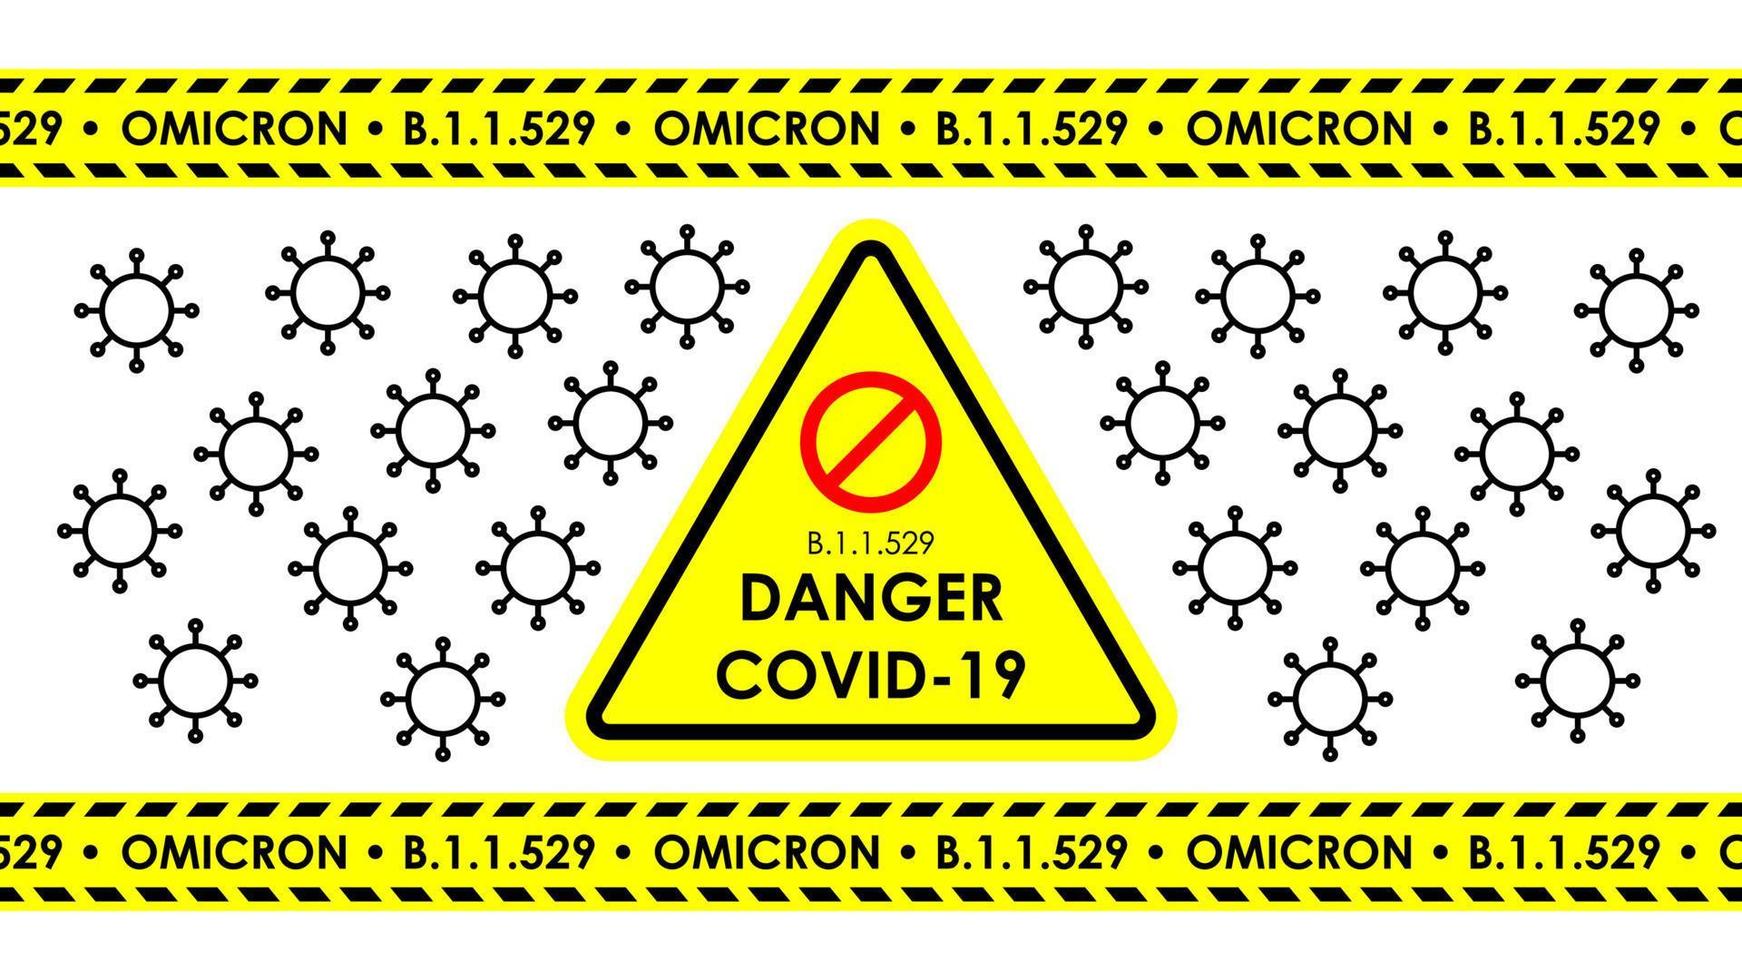 danger covid-19 nouvelle variante b.1.1.529 omicron, qui a classé la nouvelle mutation virale omicron. vecteur